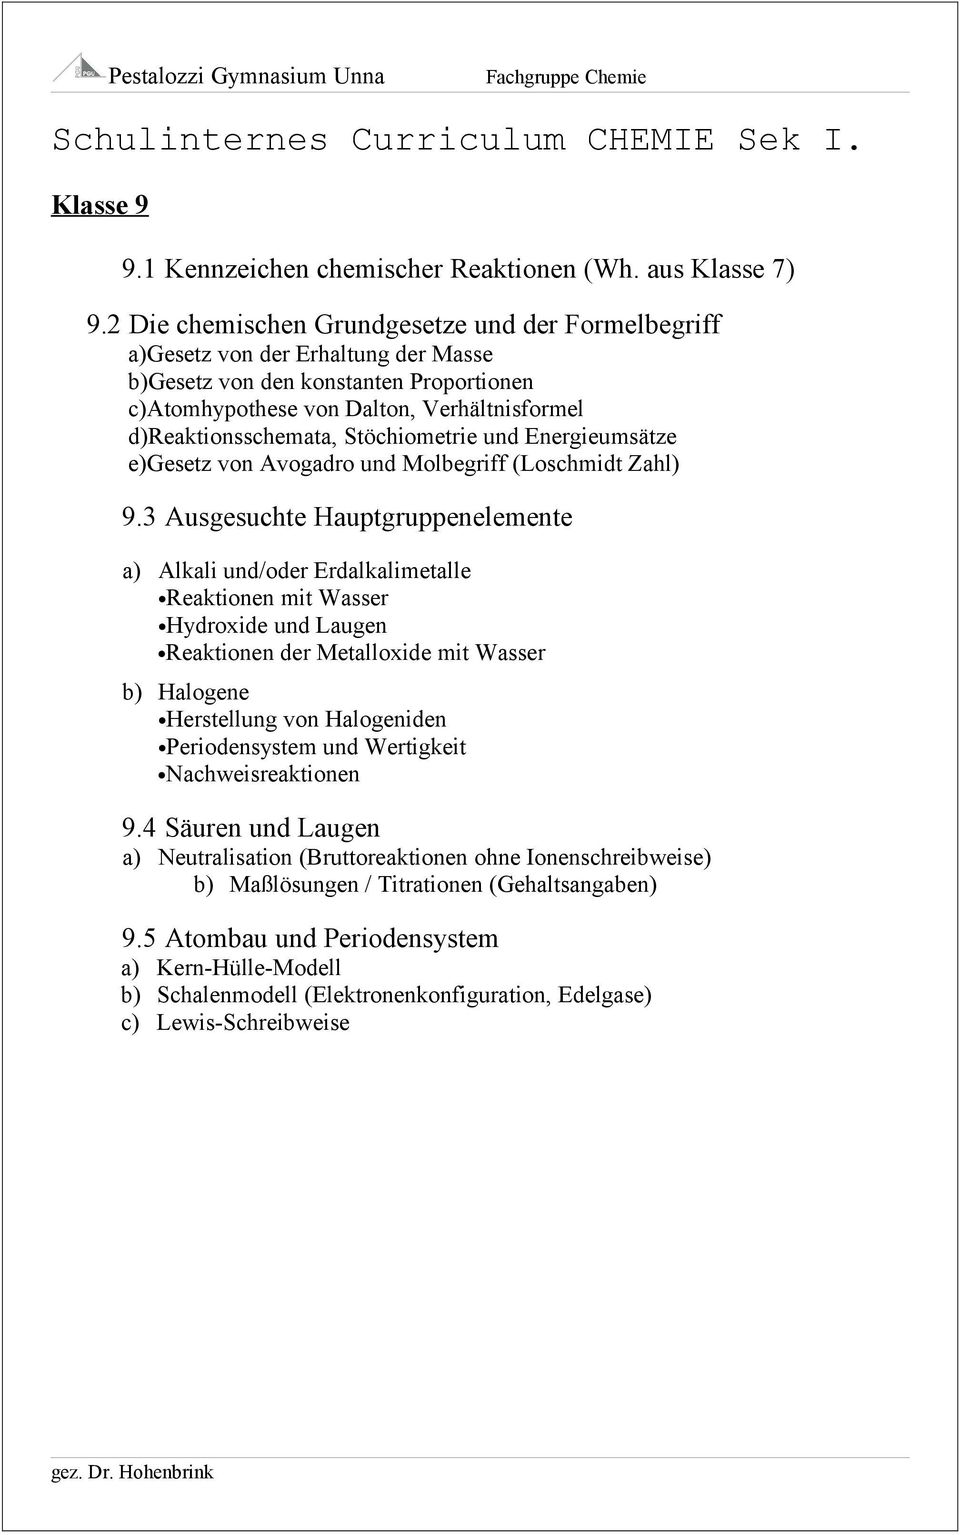 Stöchiometrie und Energieumsätze e)gesetz von Avogadro und Molbegriff (Loschmidt Zahl) 9.